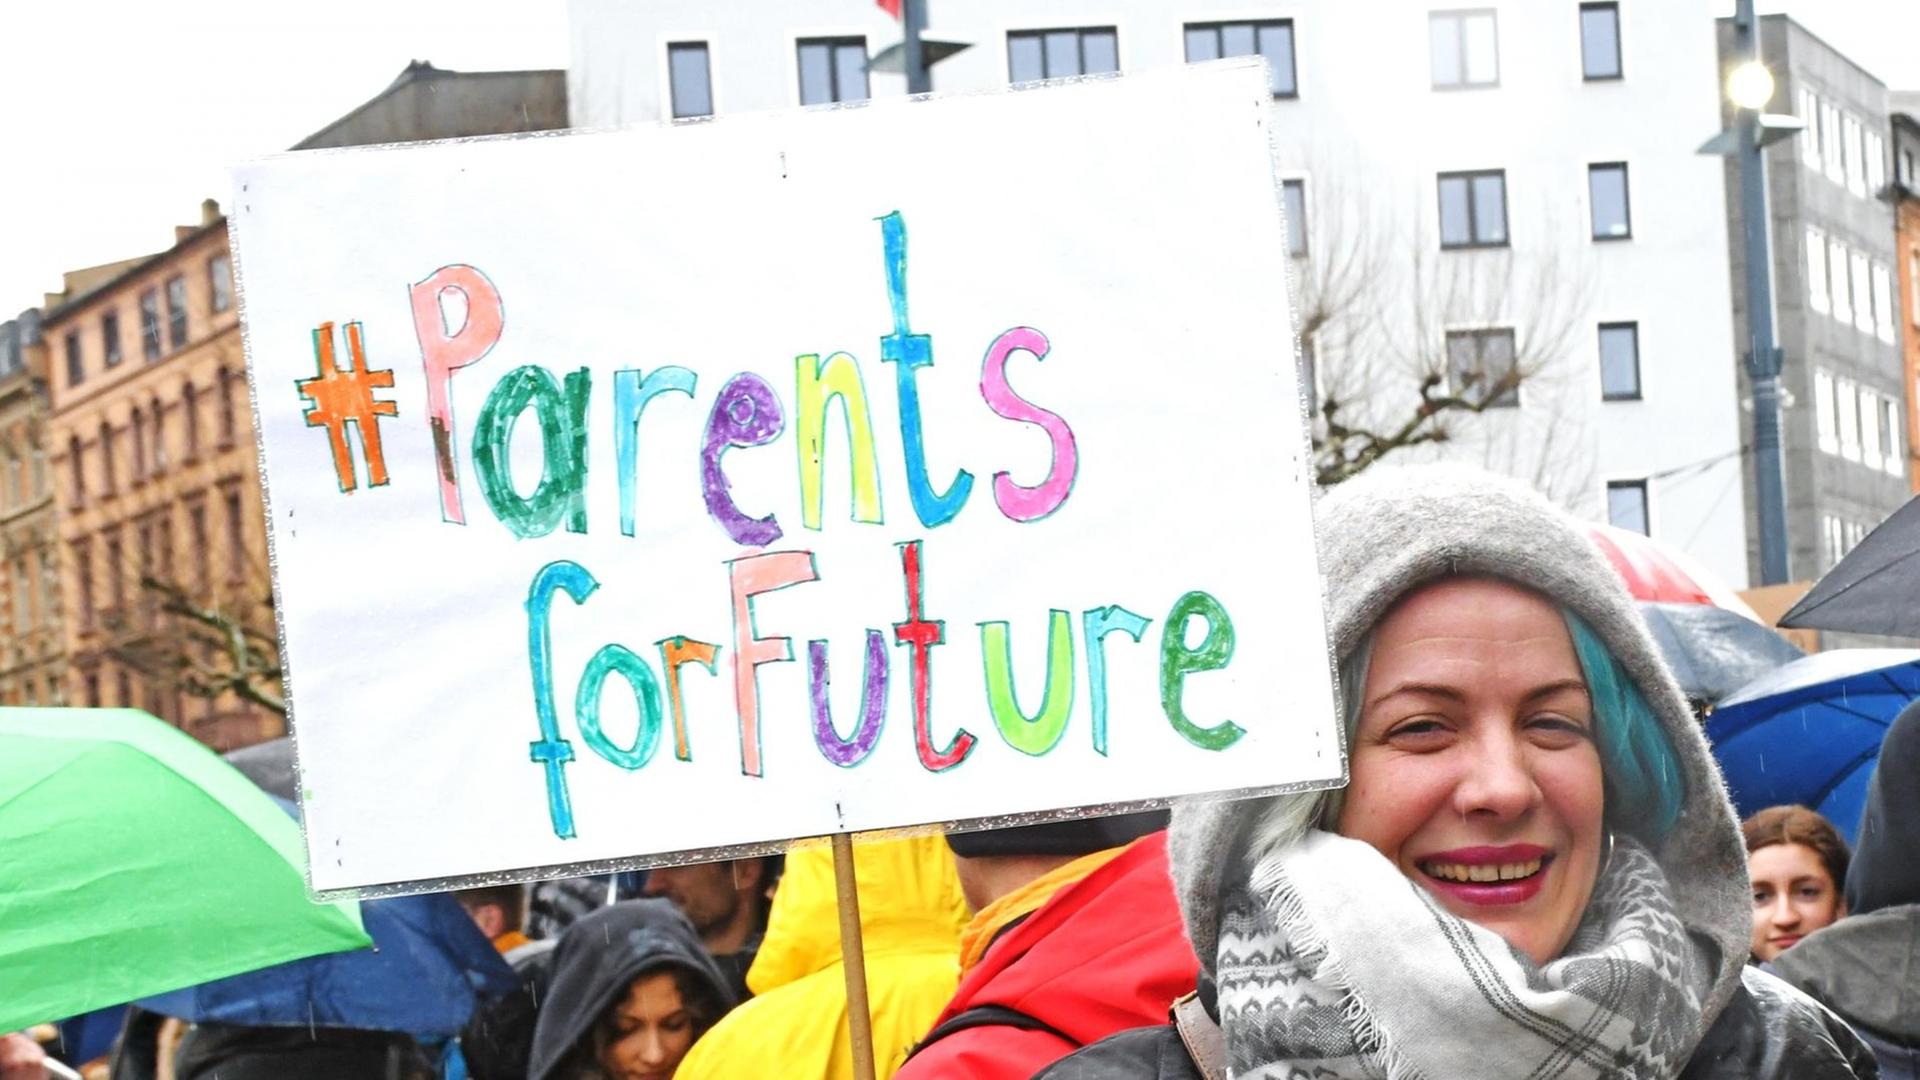 Monika Snela-Deschermaier hält ein Protestplakat mit der Aufschrift "Parents for future" in die Höhe.